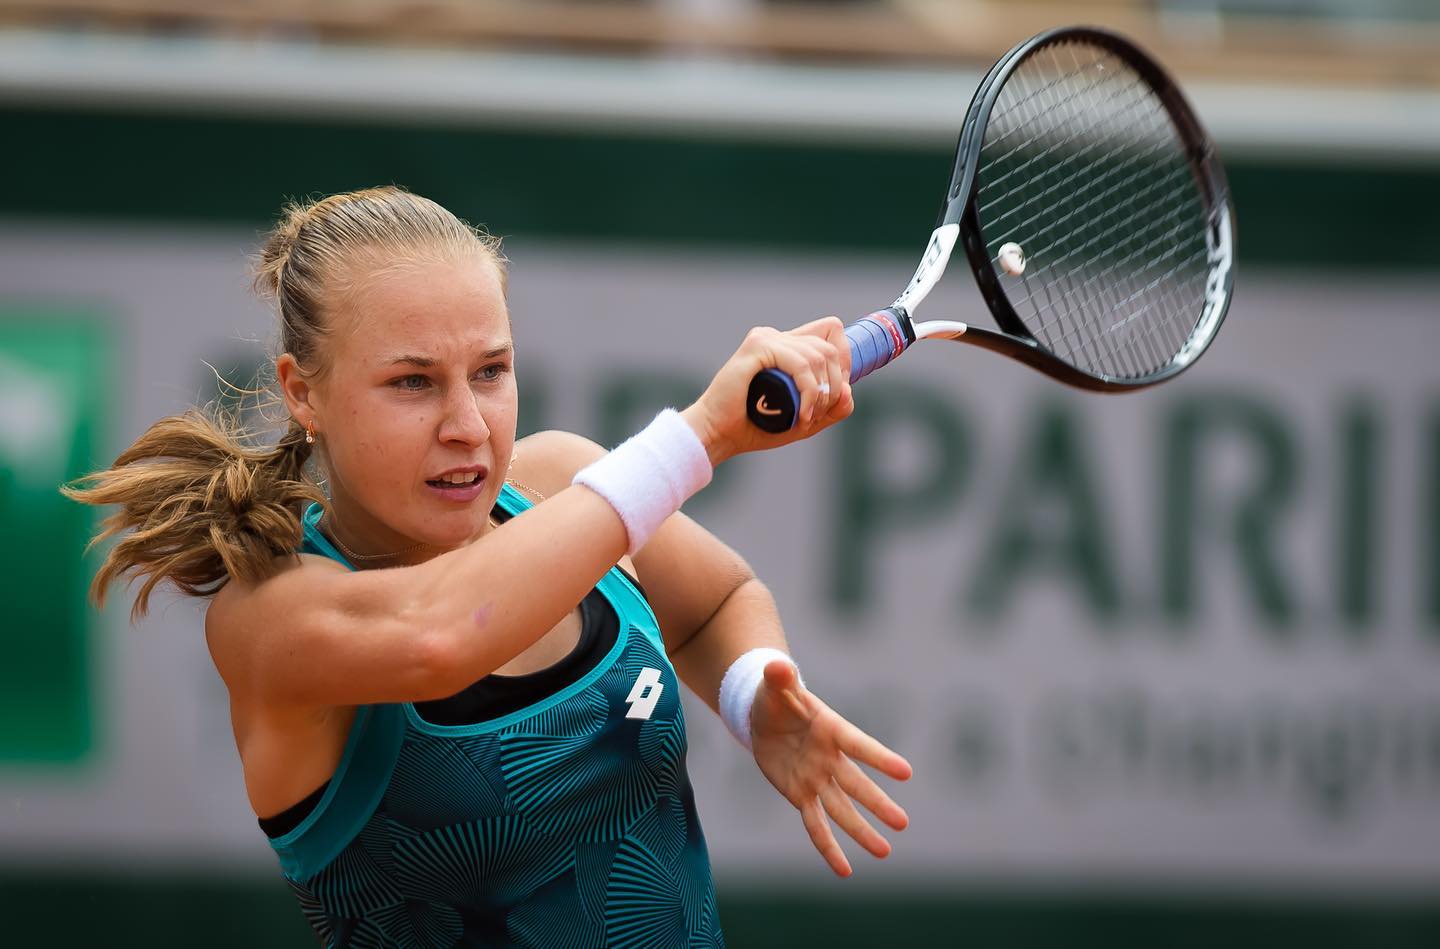 Блинкова прошла во второй круг турнира WTA в Клуж-Напоке, обыграв Вальтерт